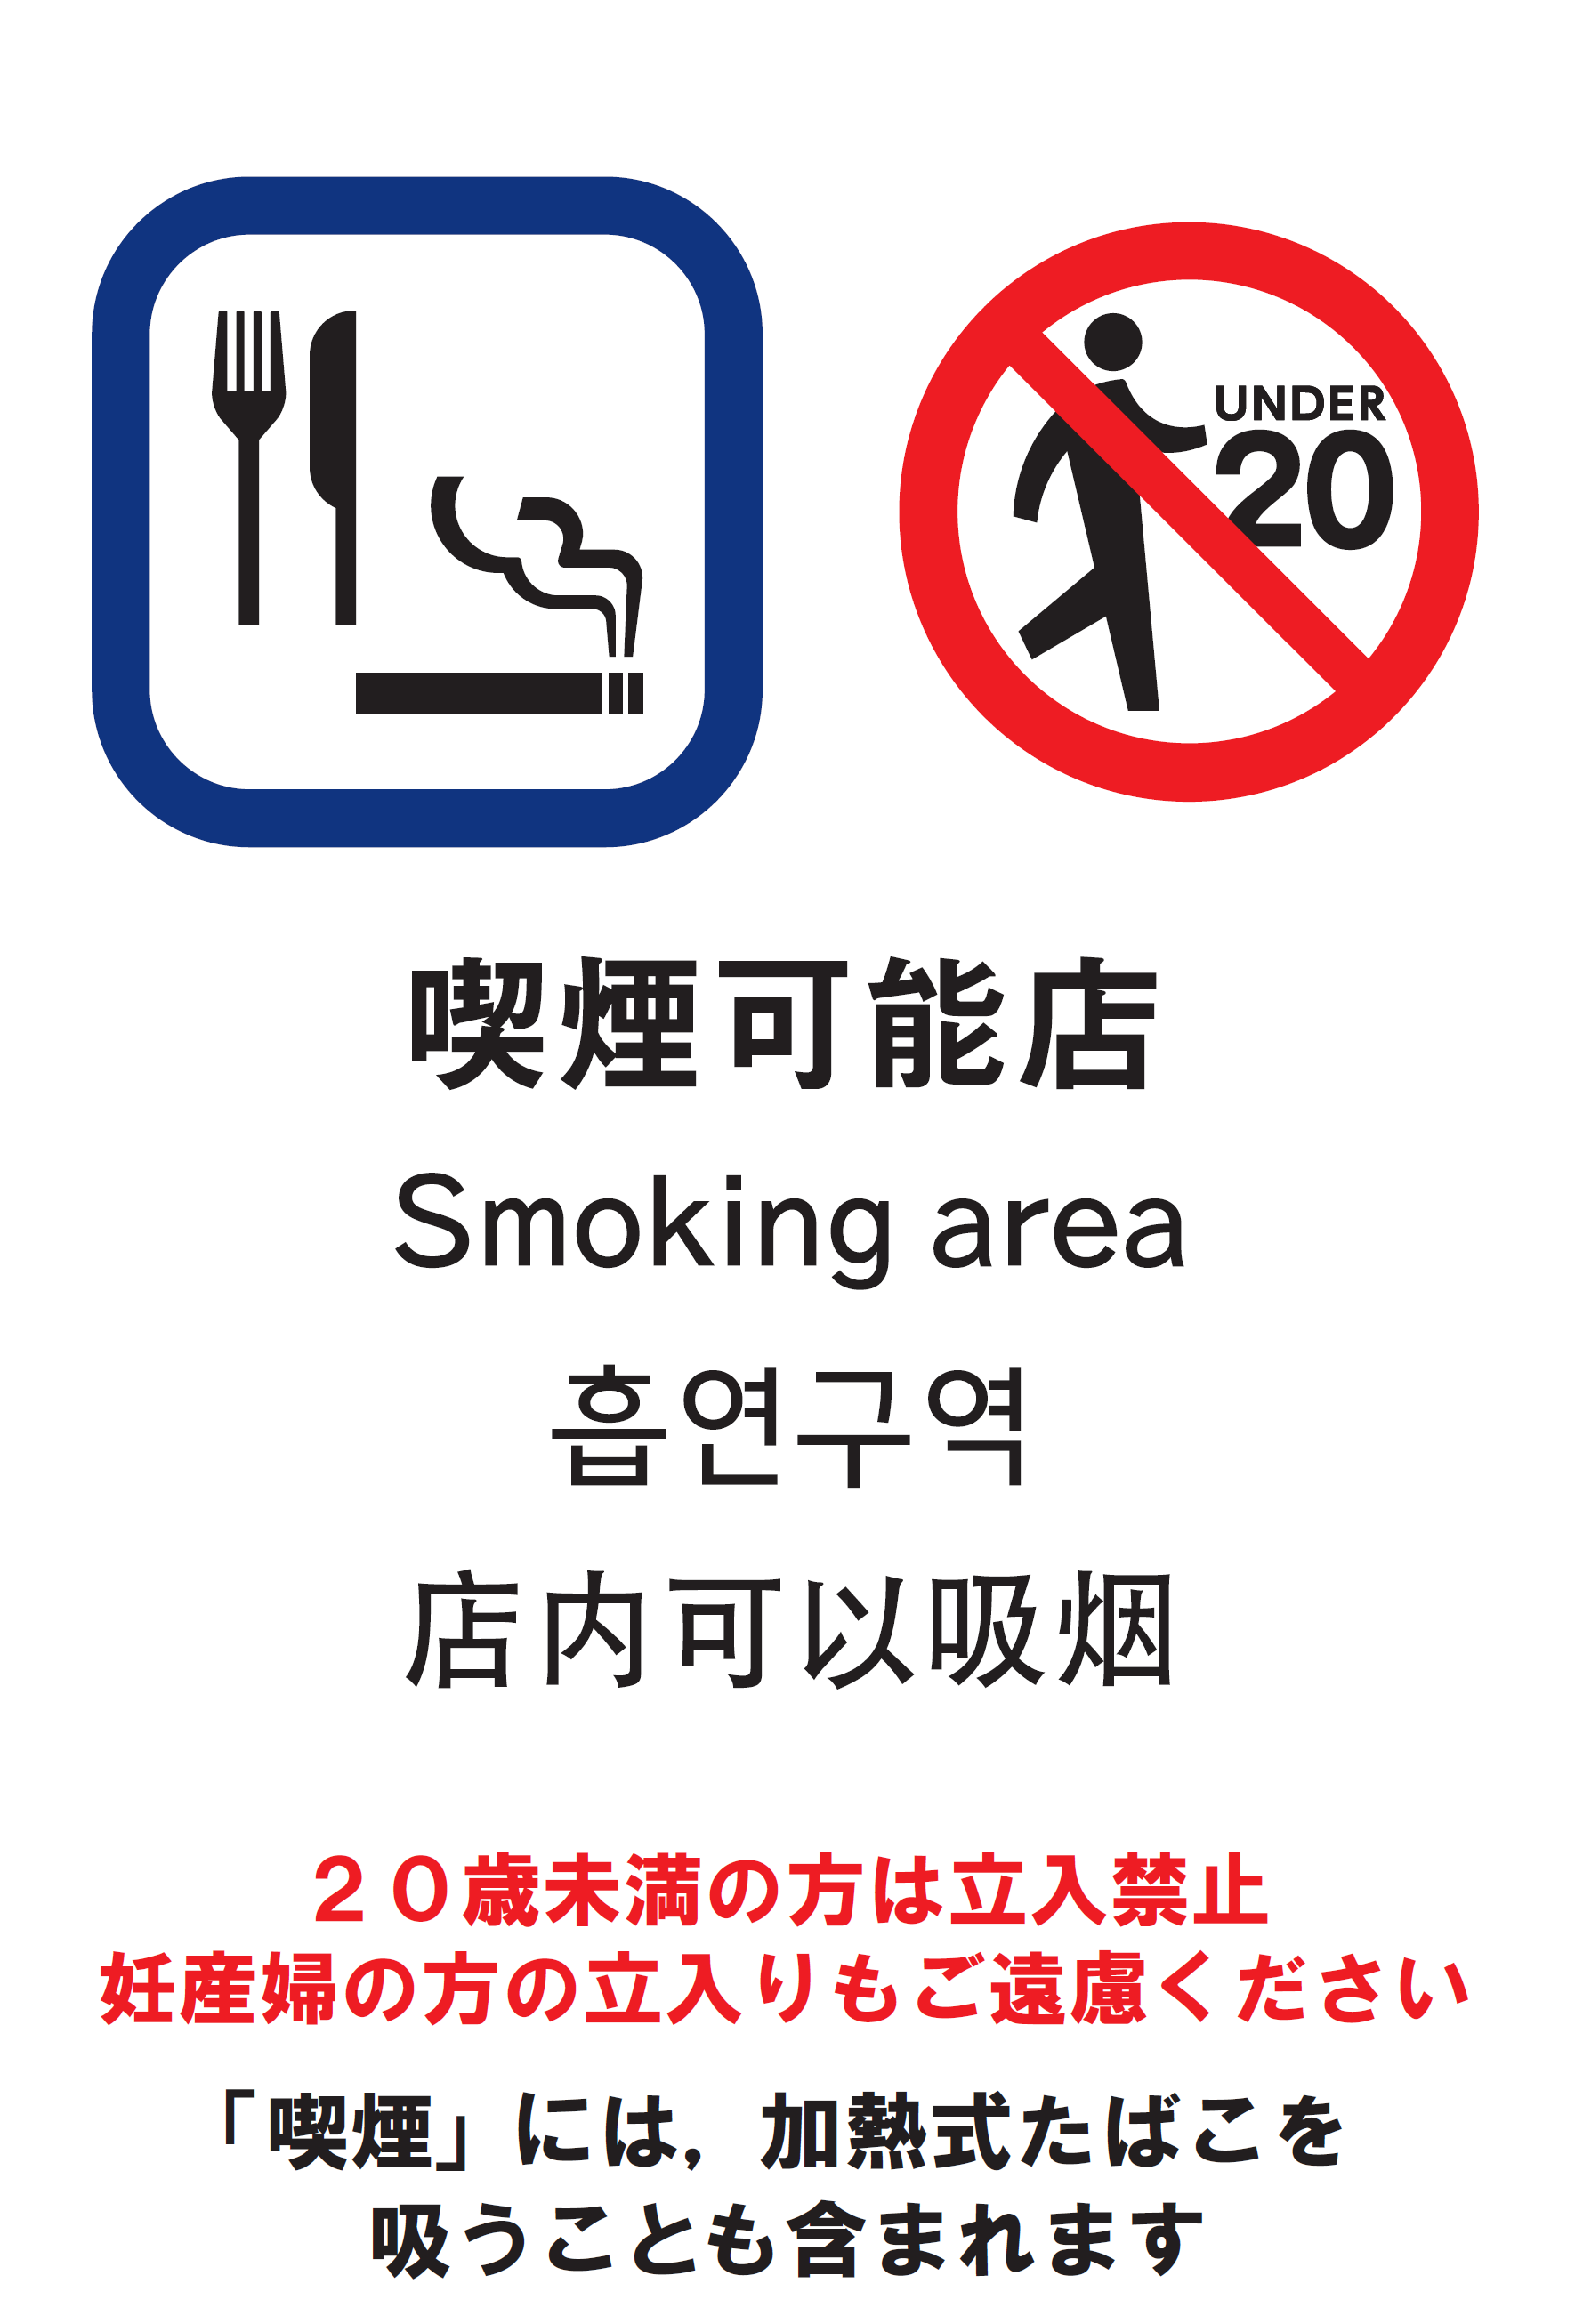 京都市 受動喫煙を防止しましょう